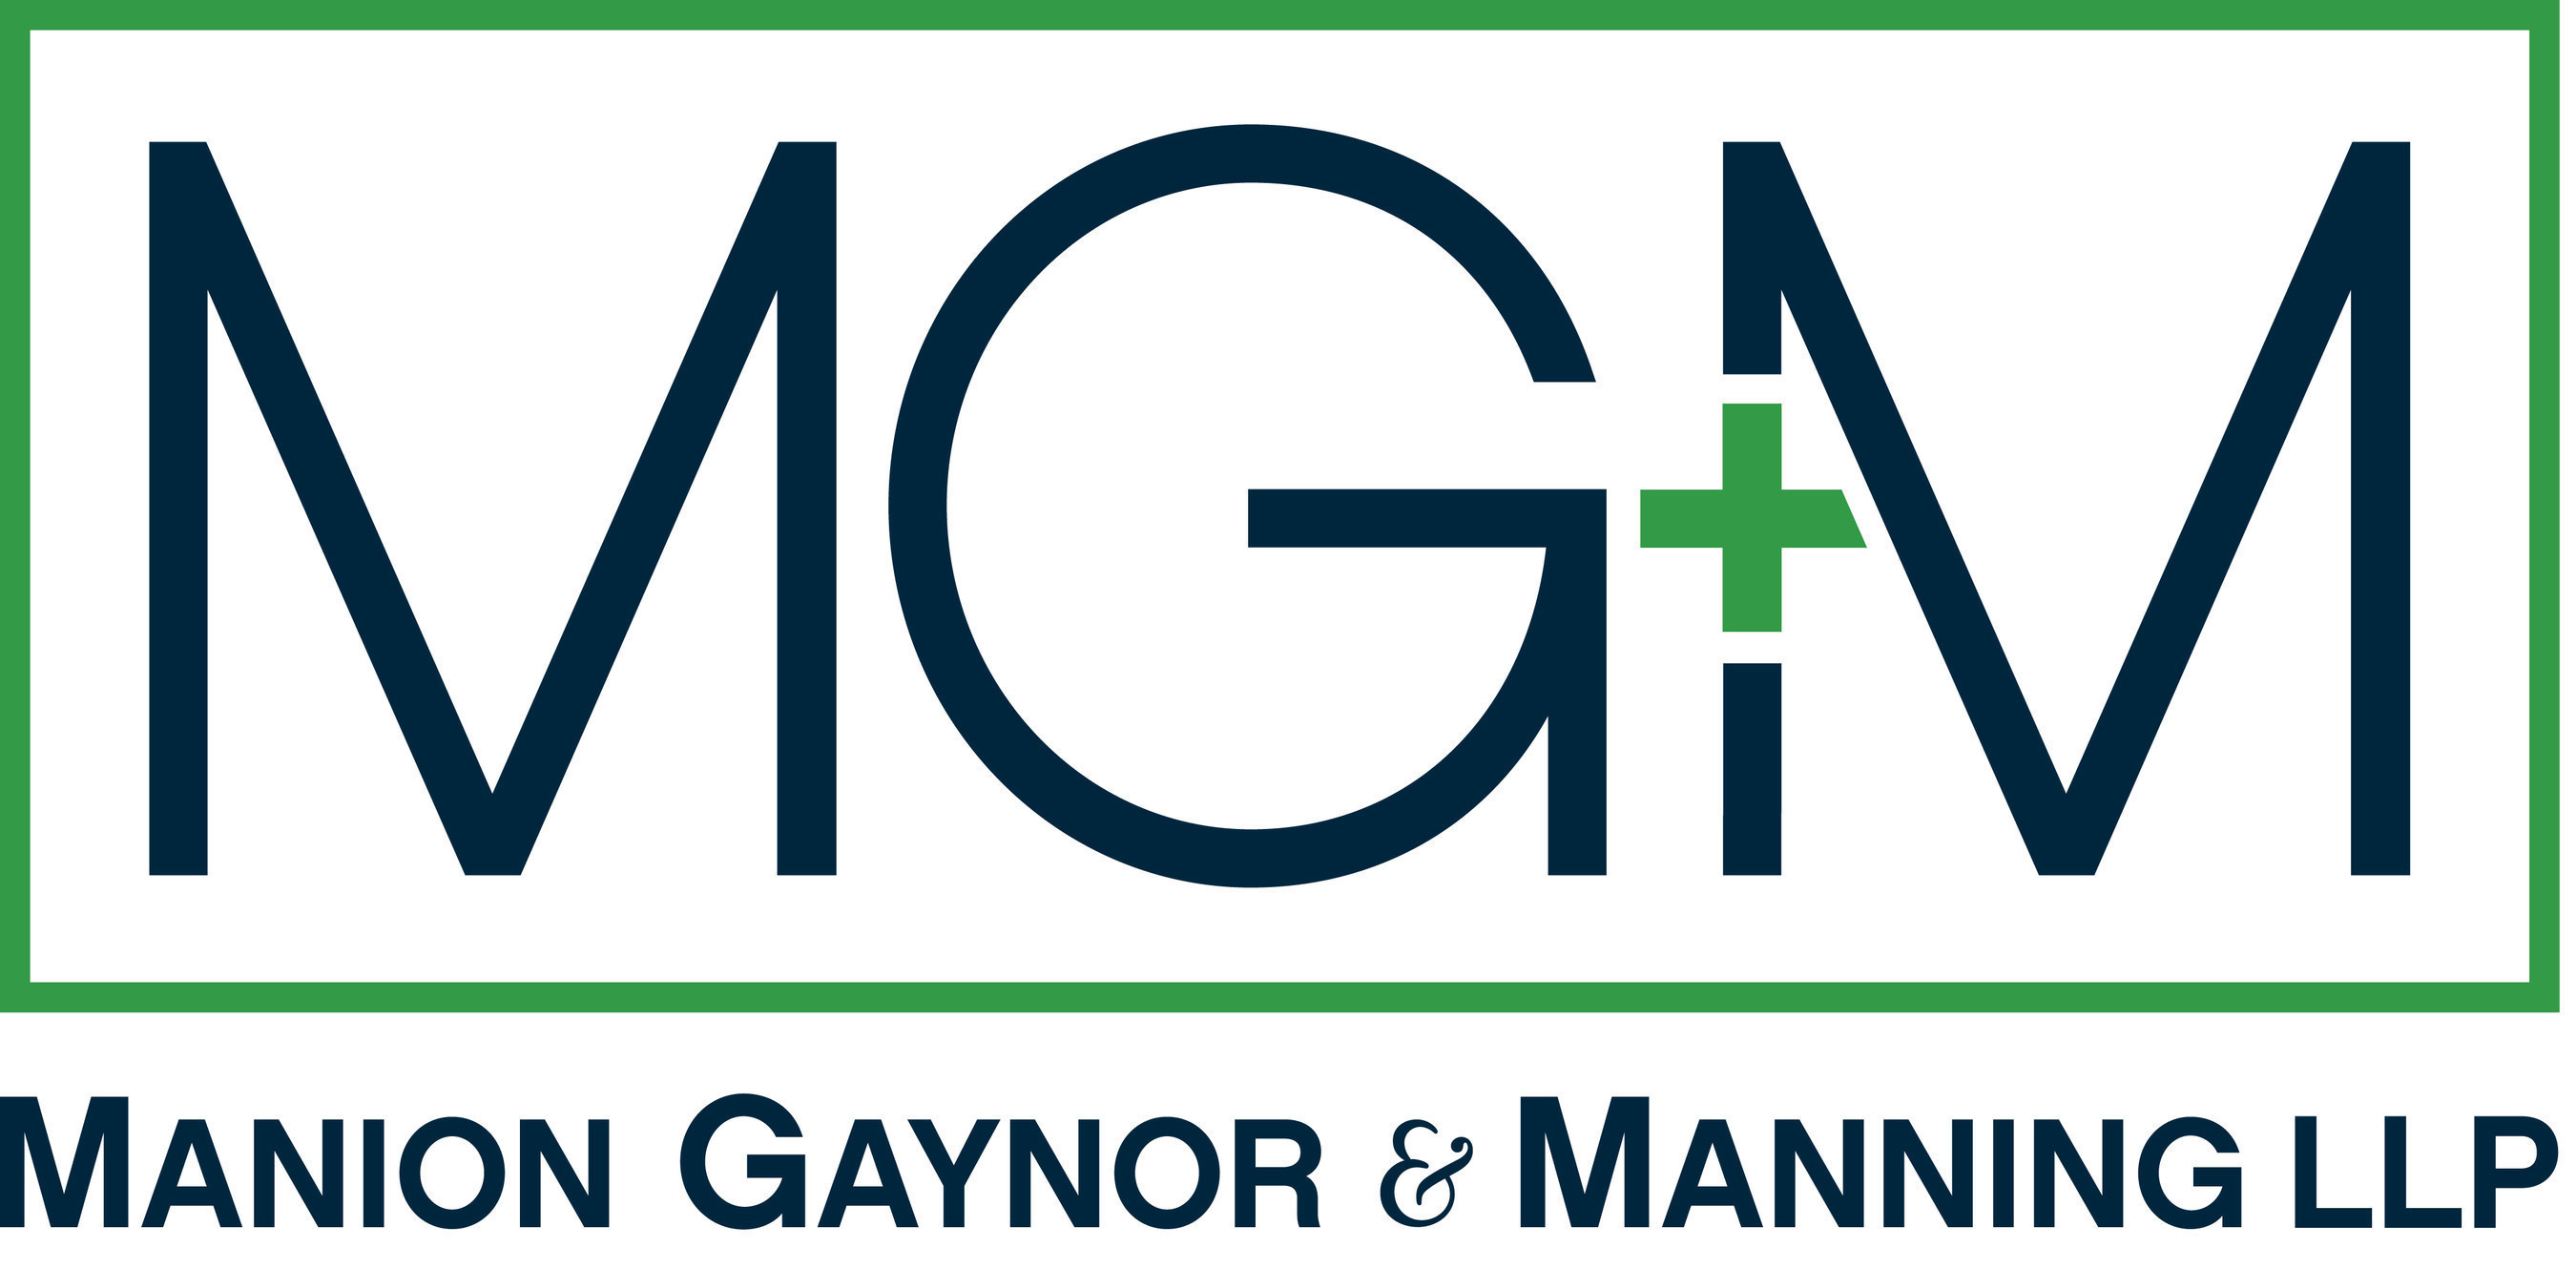 Manion Gaynor & Manning LLP  www.mgmlaw.com